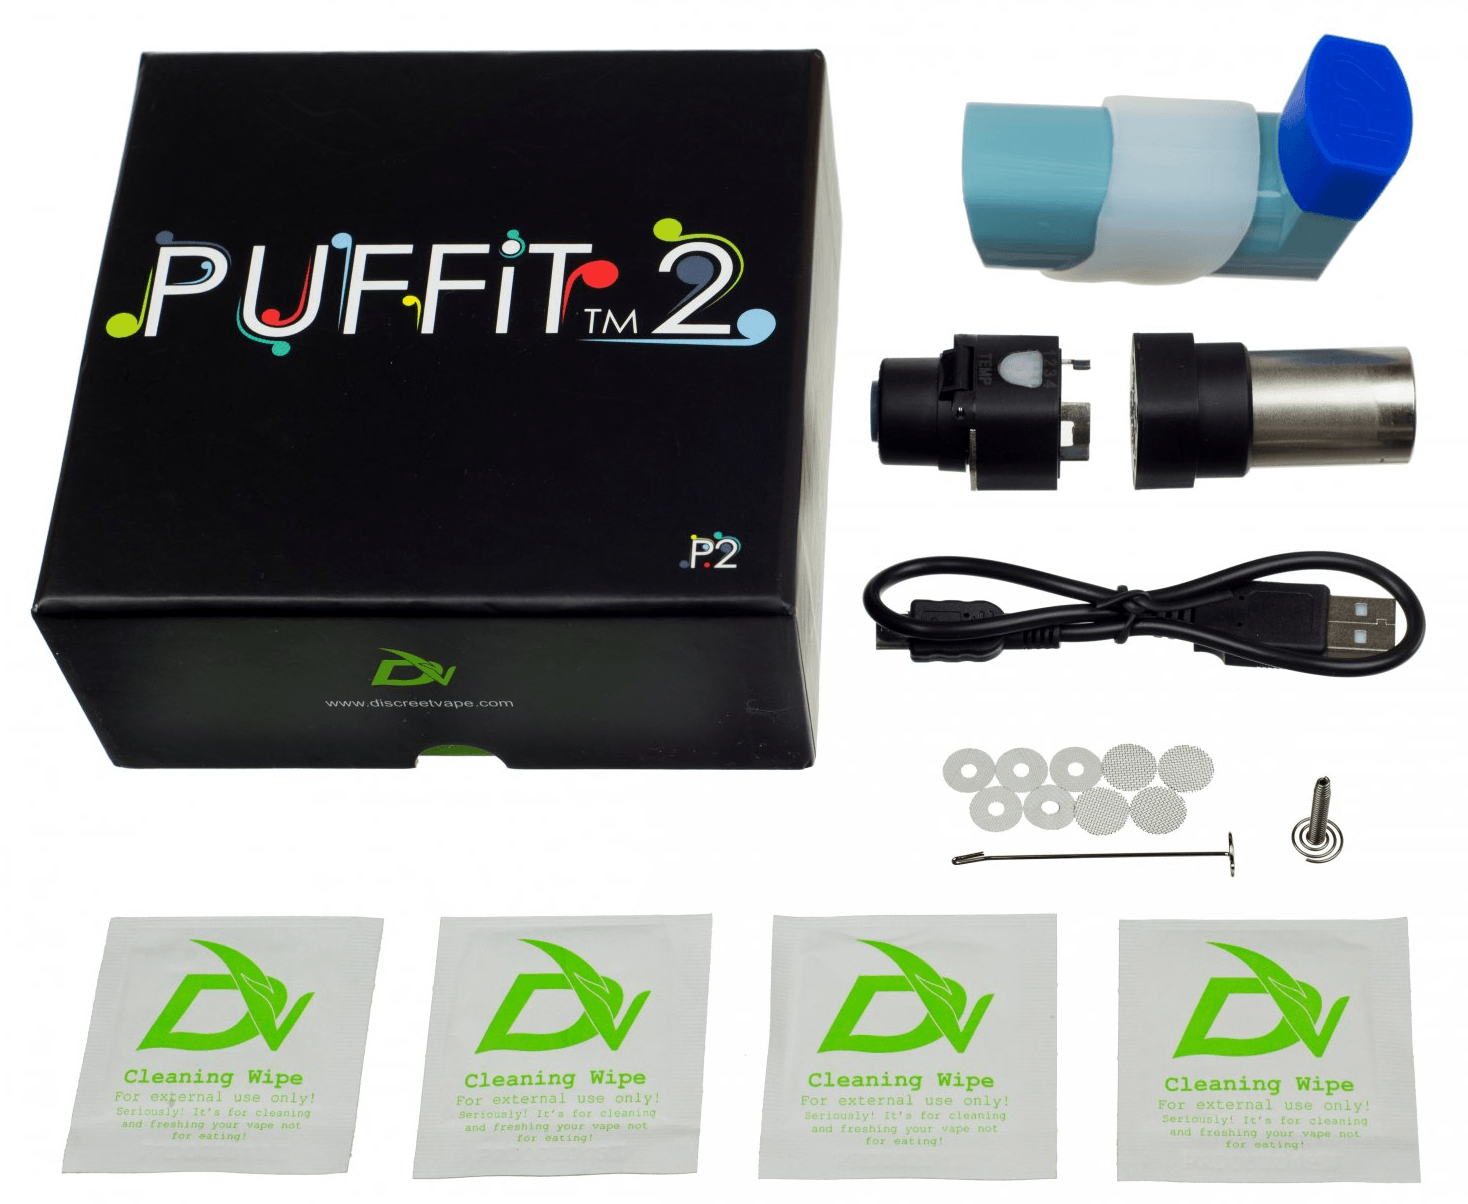 PUFFiT 2 - vaporizer